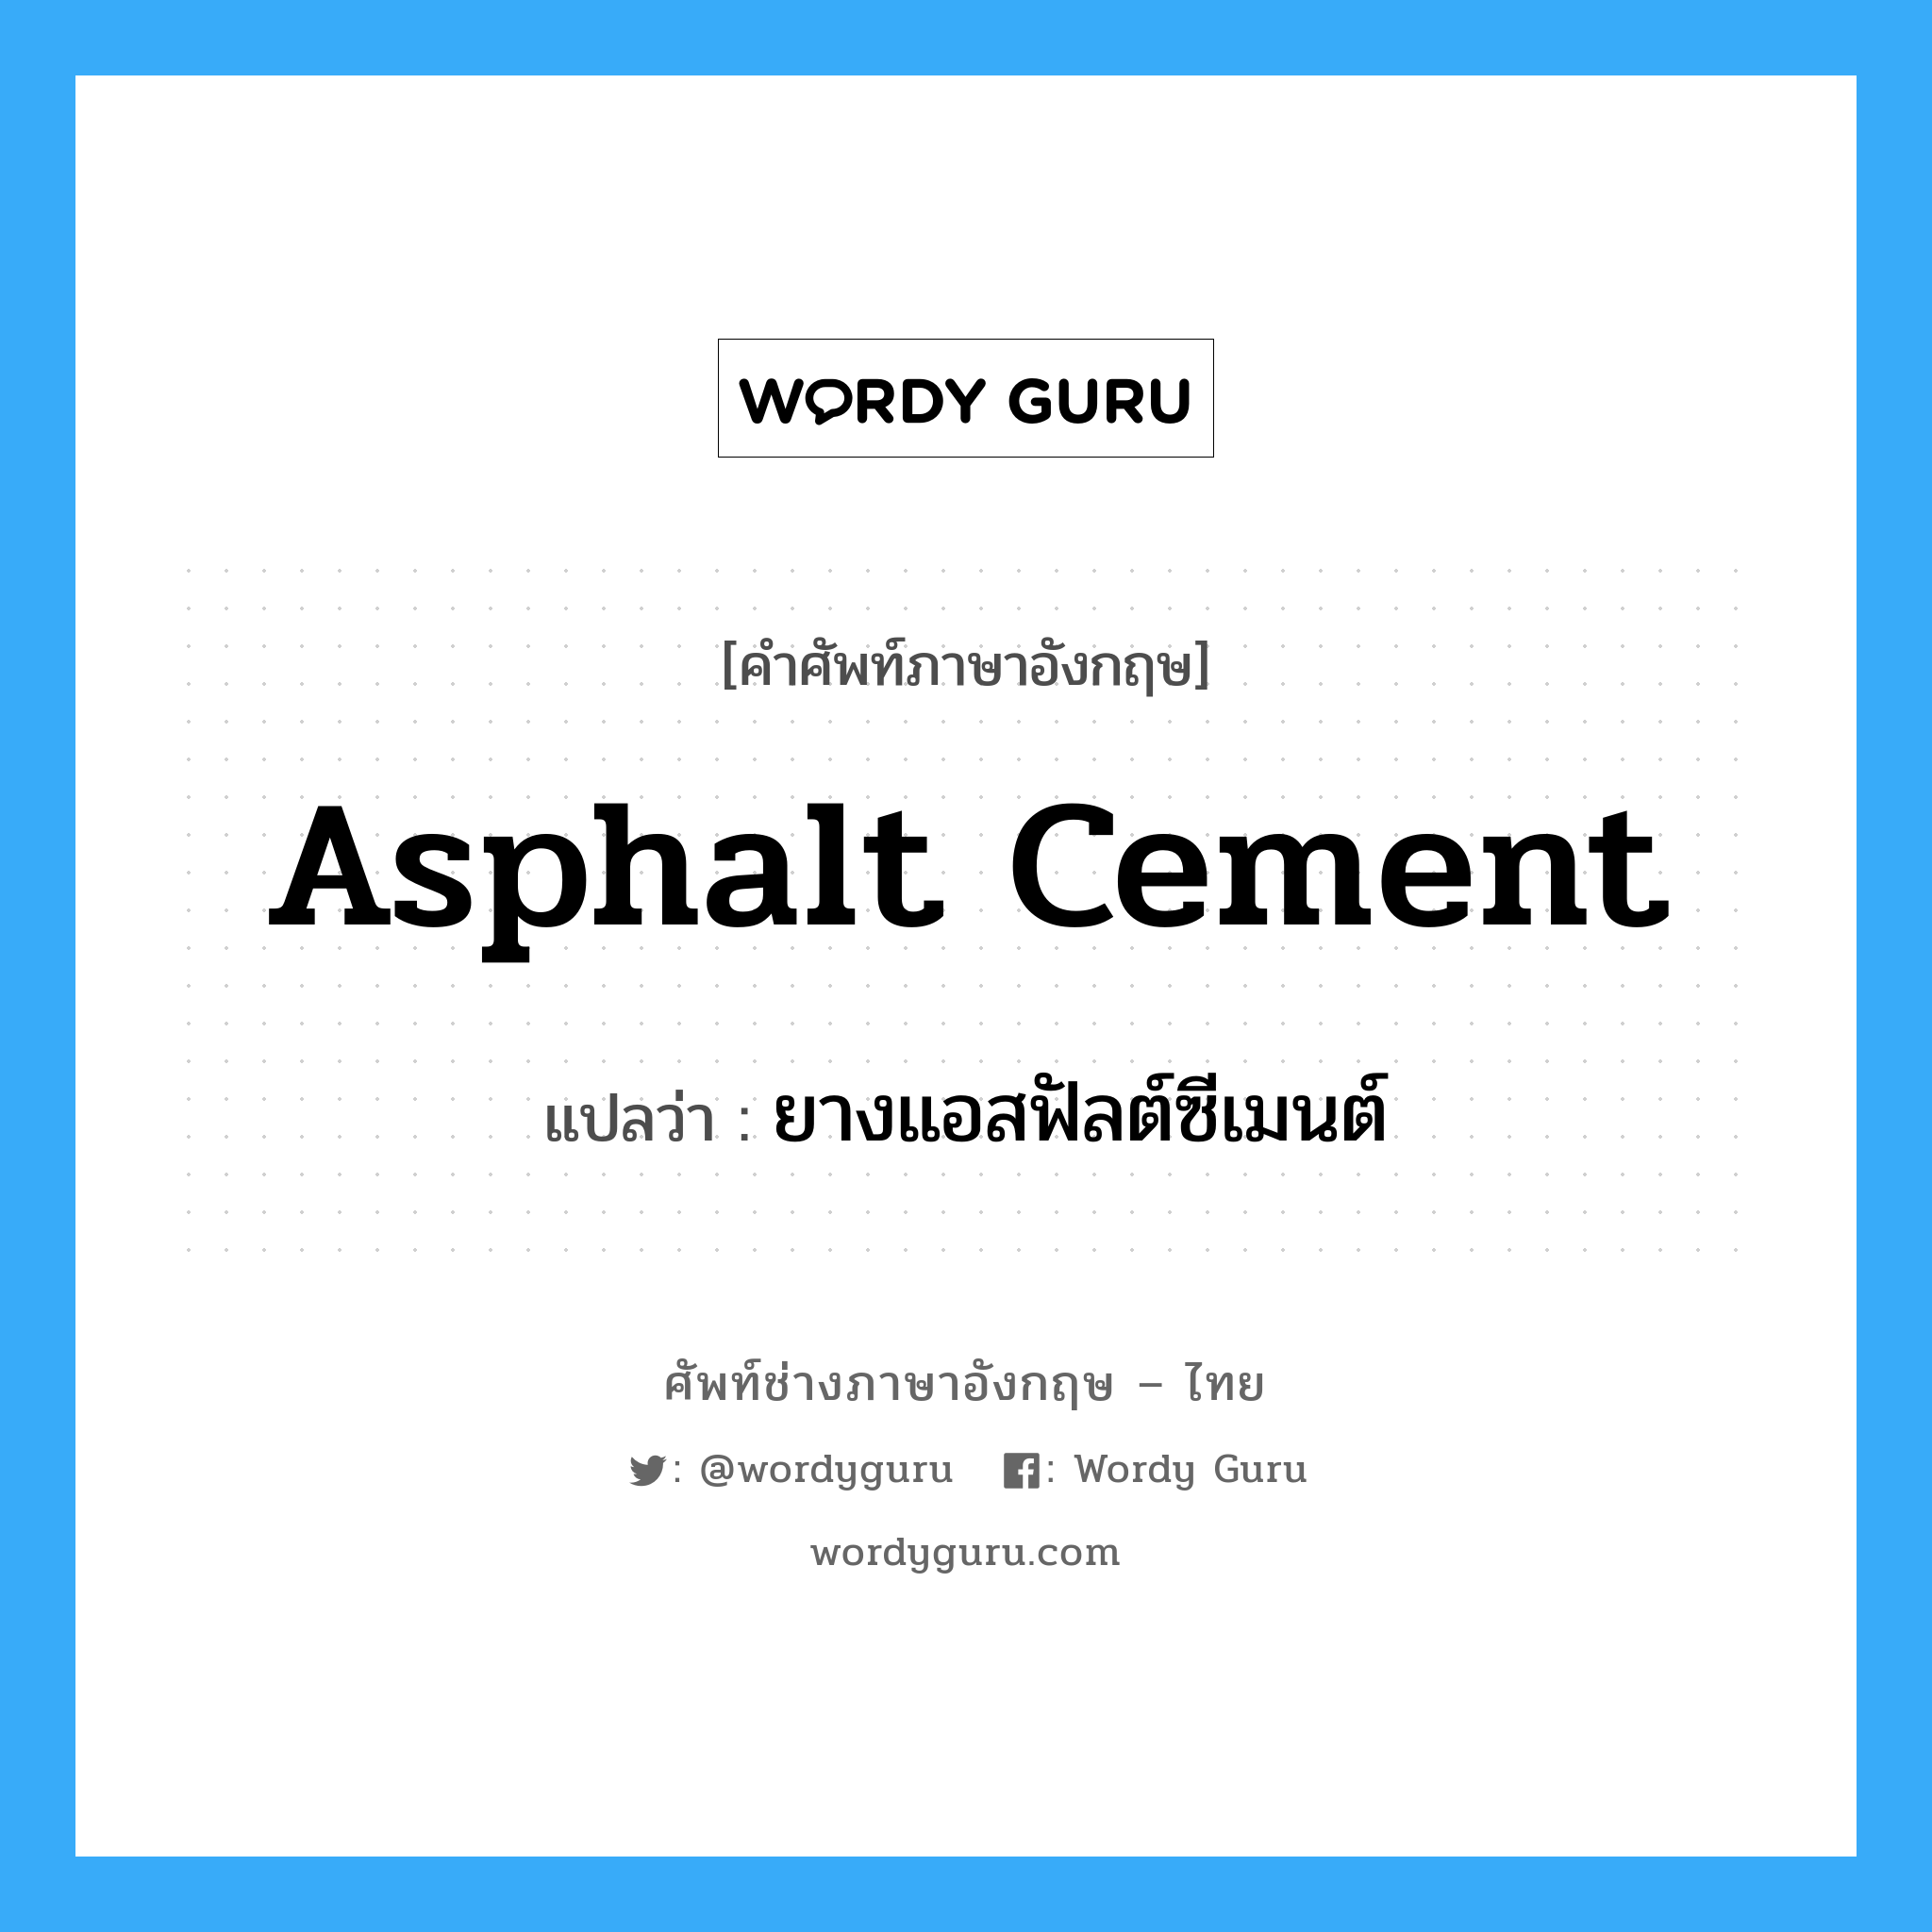 ยางแอสฟัลต์ซีเมนต์ ภาษาอังกฤษ?, คำศัพท์ช่างภาษาอังกฤษ - ไทย ยางแอสฟัลต์ซีเมนต์ คำศัพท์ภาษาอังกฤษ ยางแอสฟัลต์ซีเมนต์ แปลว่า asphalt cement